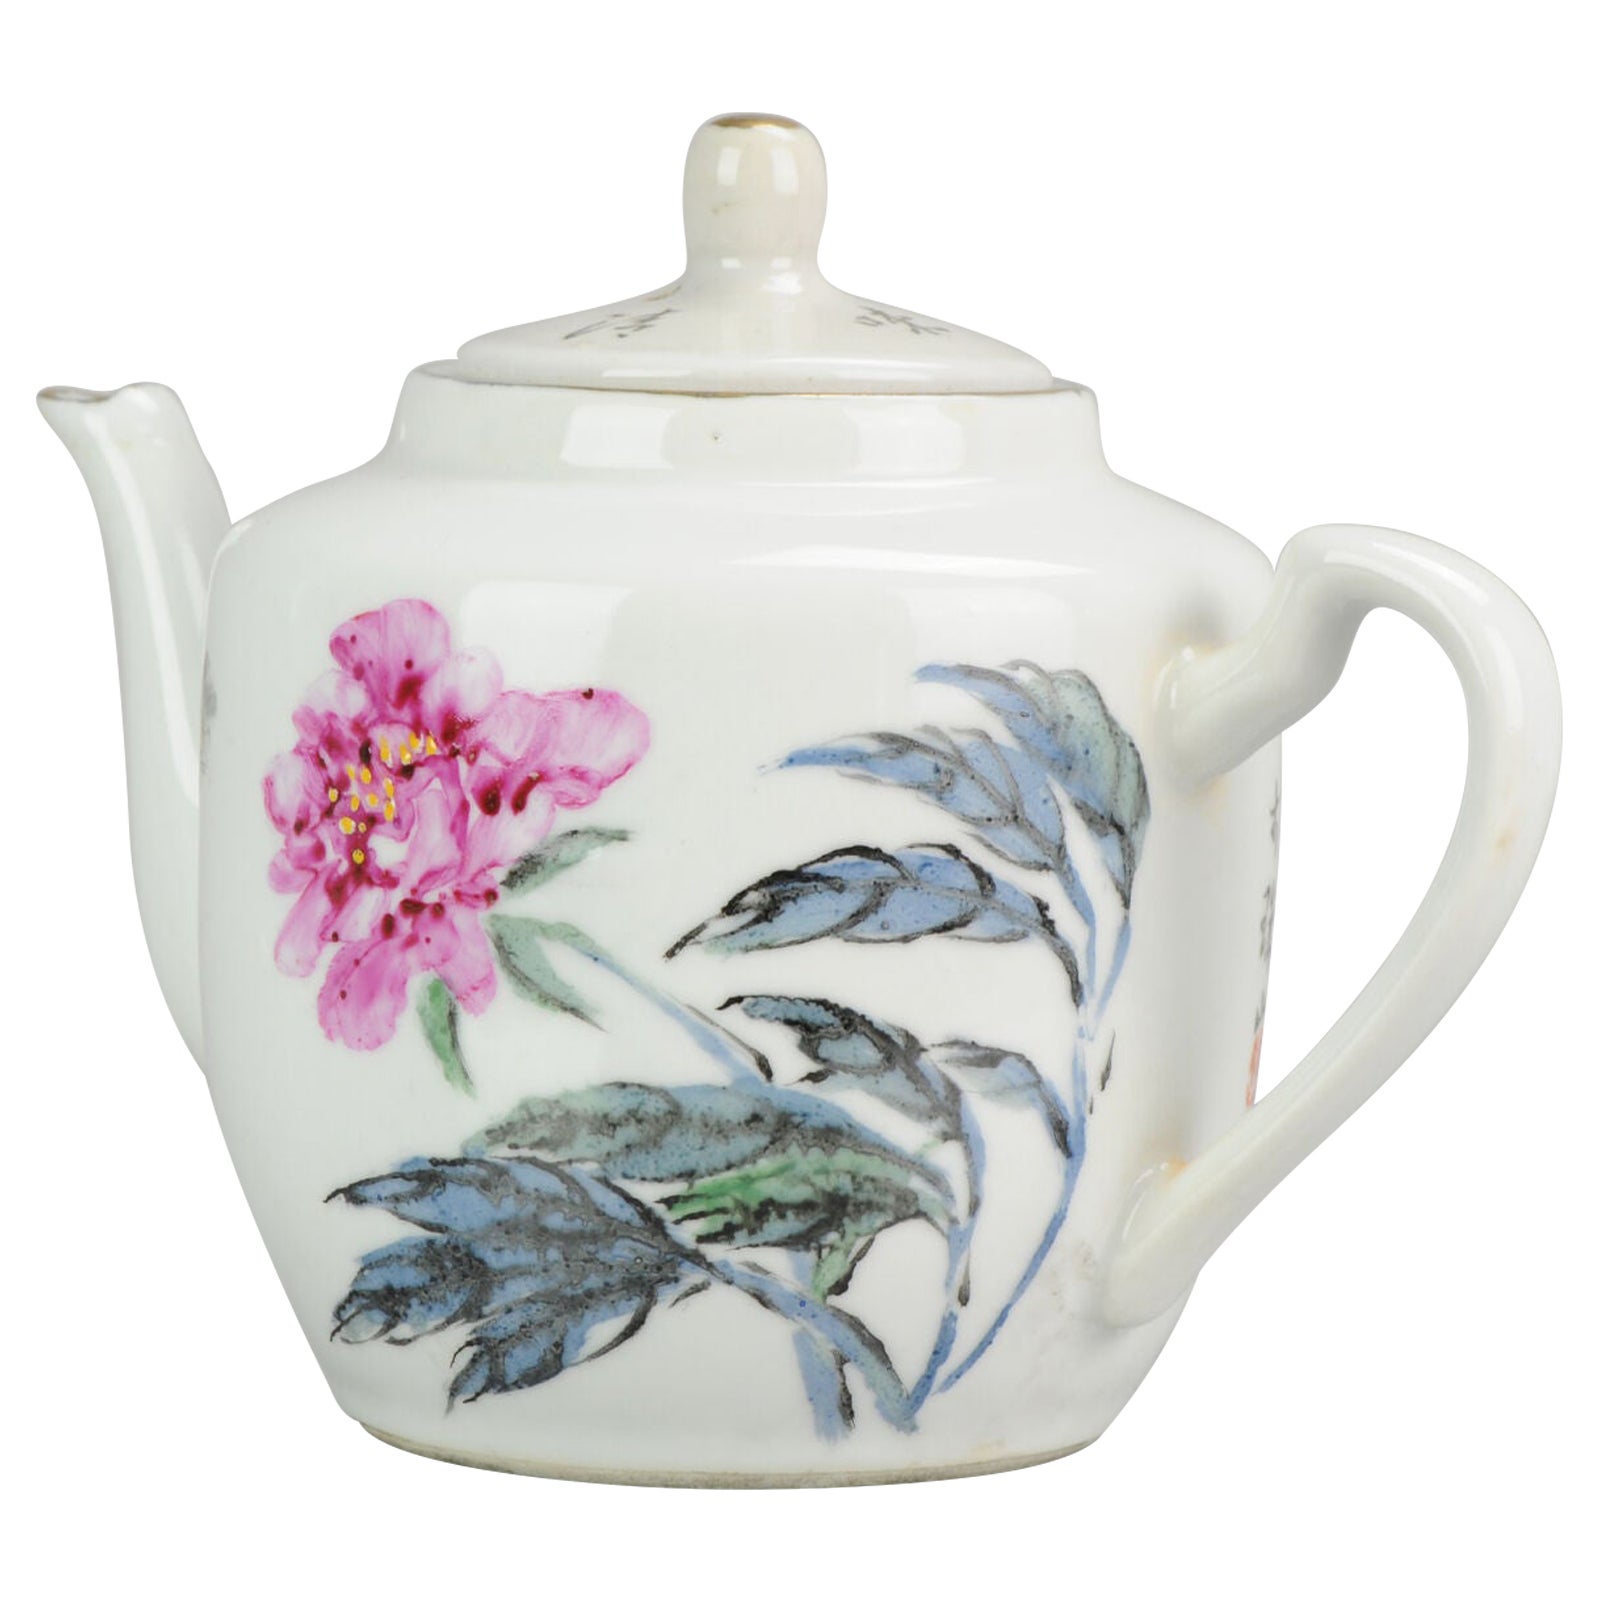 Chinese Porcelain Art Proc Fencai Teapot with Flowers & Poem, 1980/1990